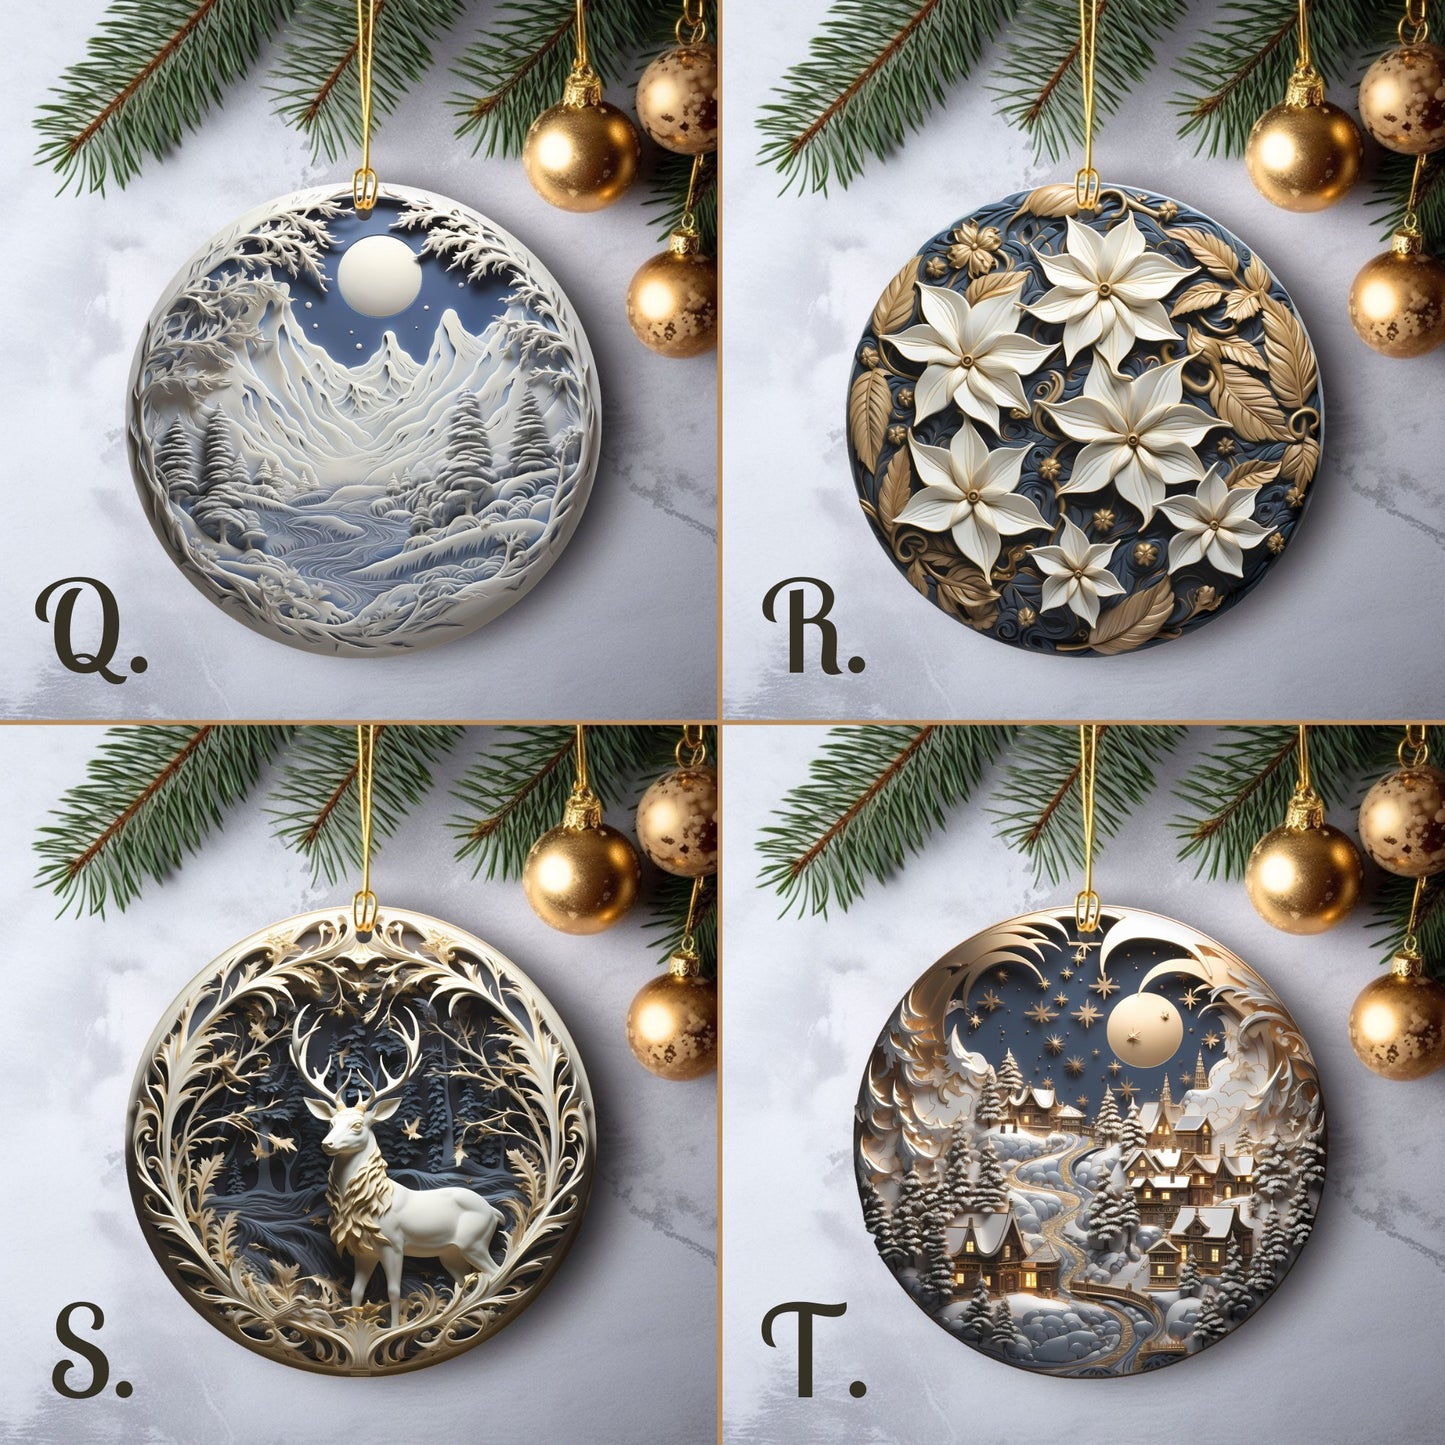 Stilvolle Ornamente, Set mit 20 runden Keramikornamenten, Blaugold, 3D-Druck auf Ornament, kein Relief, festliche Weihnachtsbaumdekoration